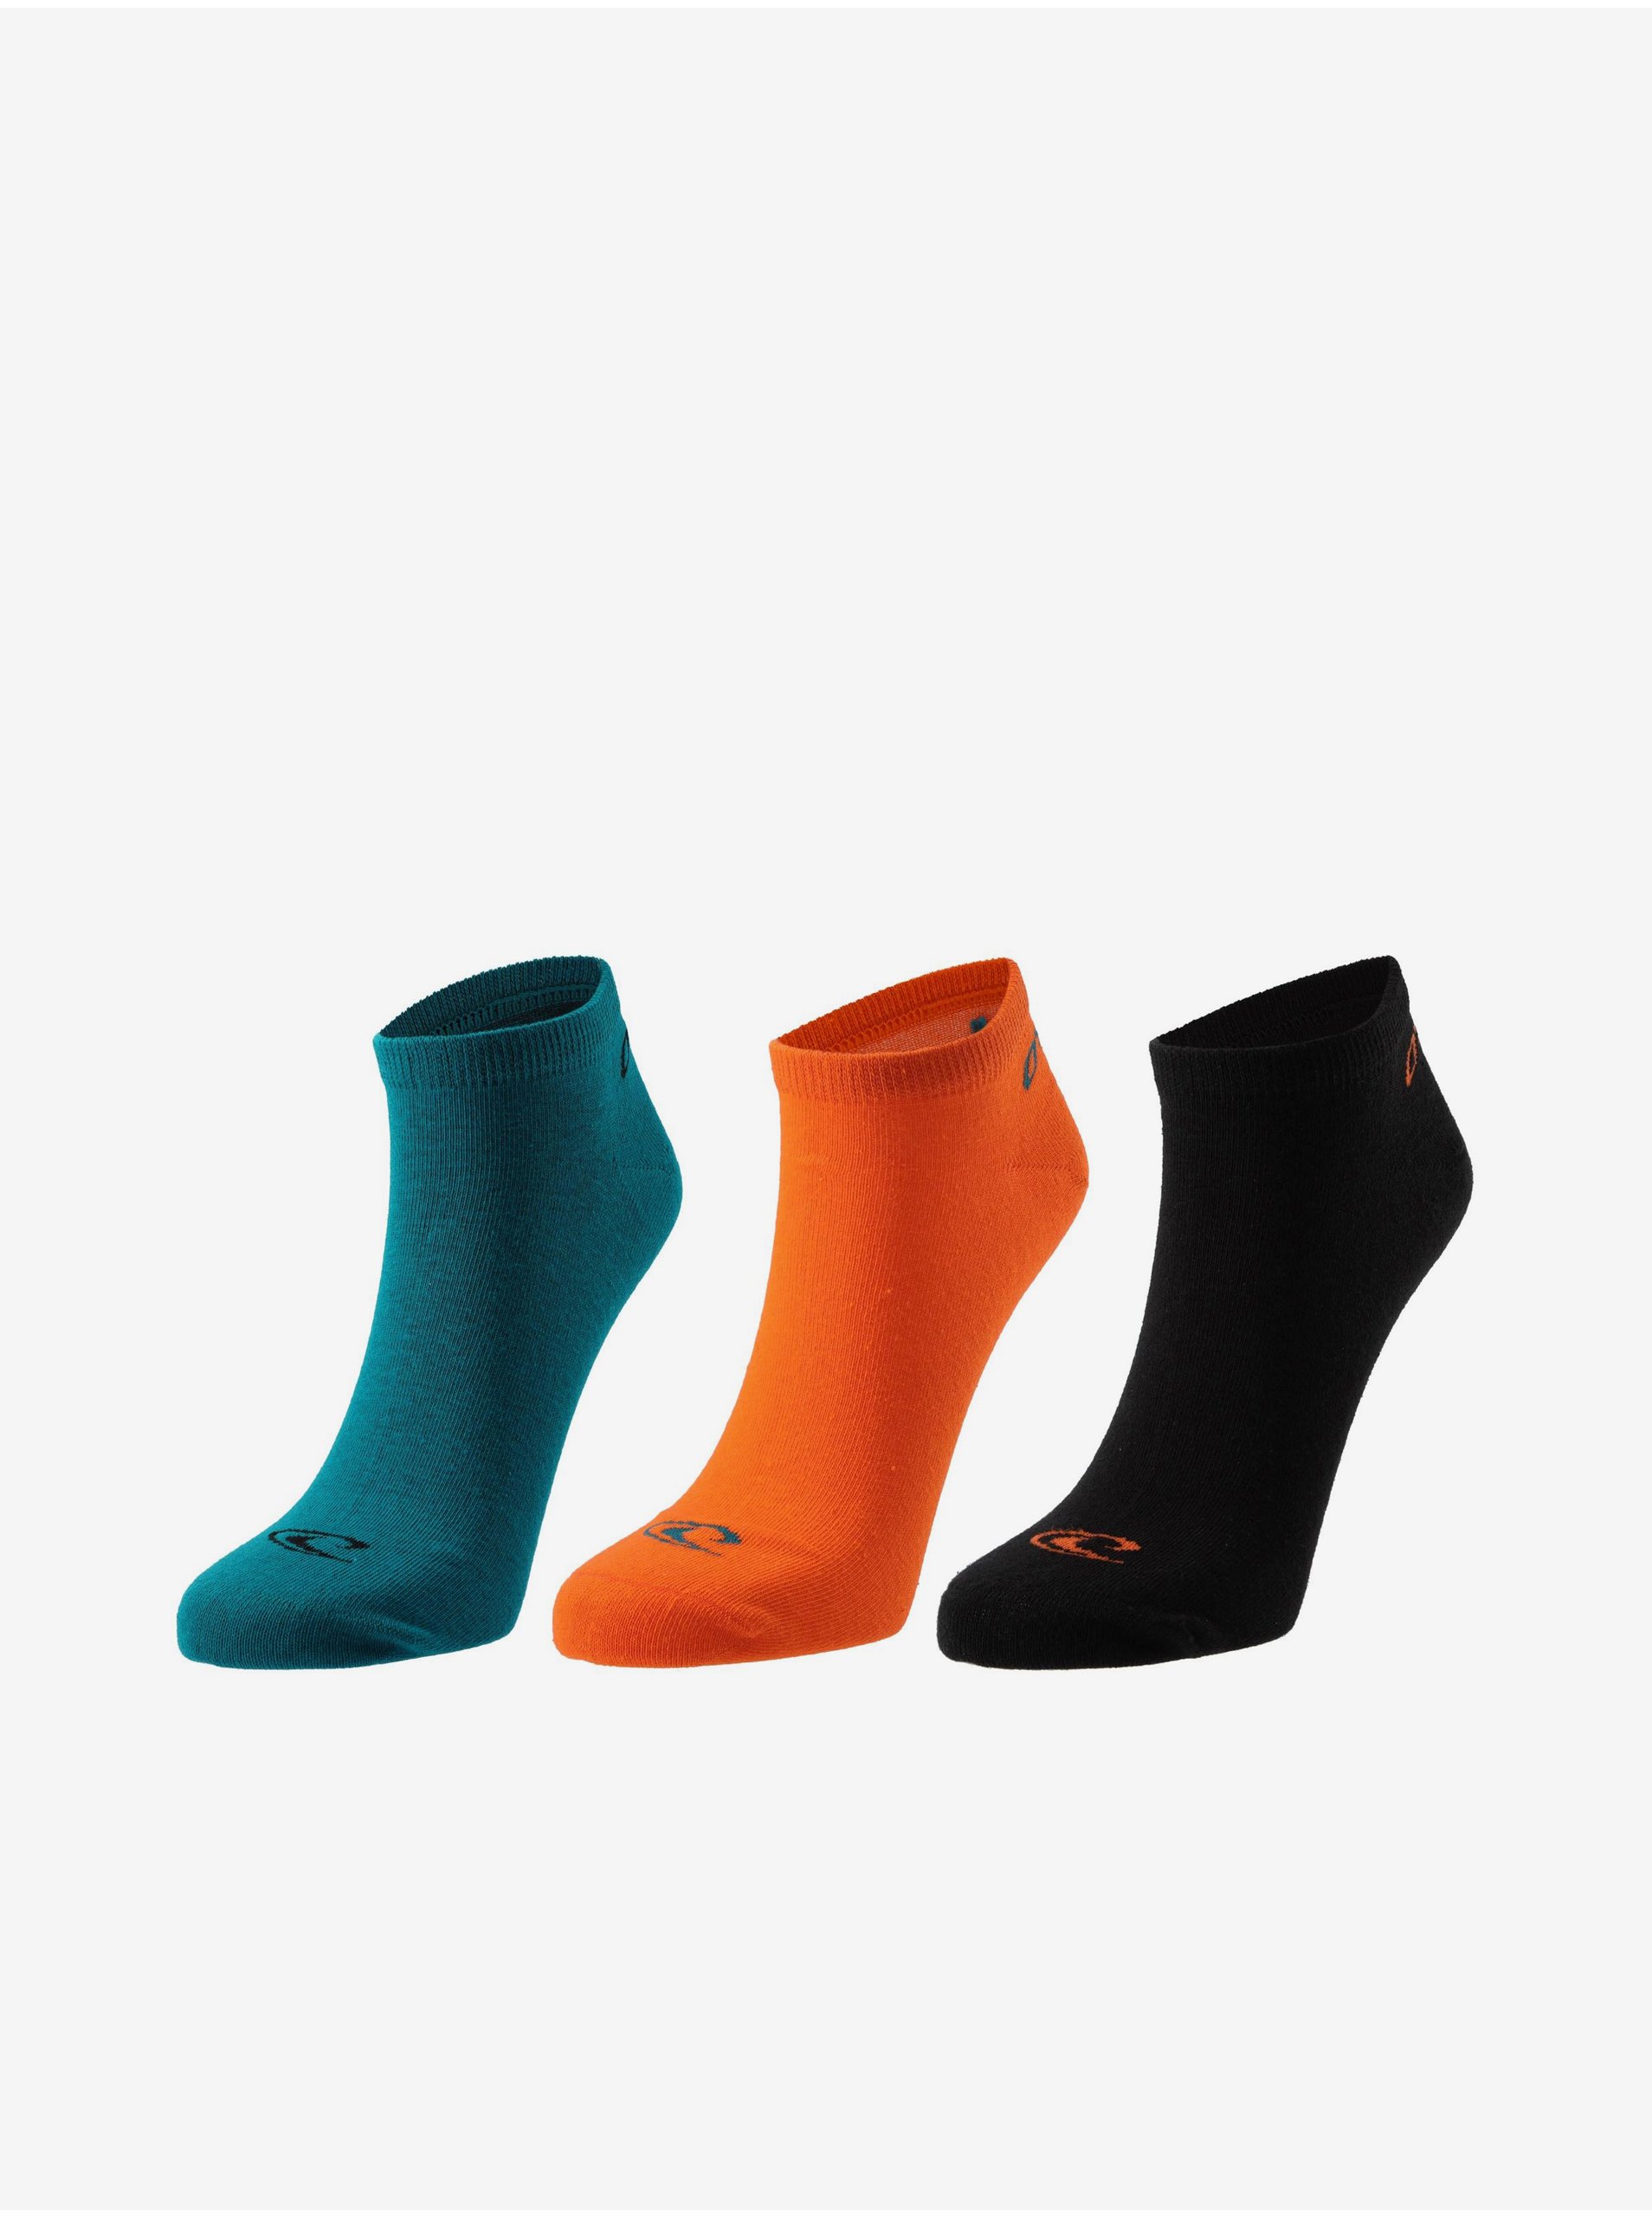 E-shop Sada tří párů unisex ponožek v oranžové, petrolejové a černé barvě O'Neill QUARTER ONEILL 3 PACK